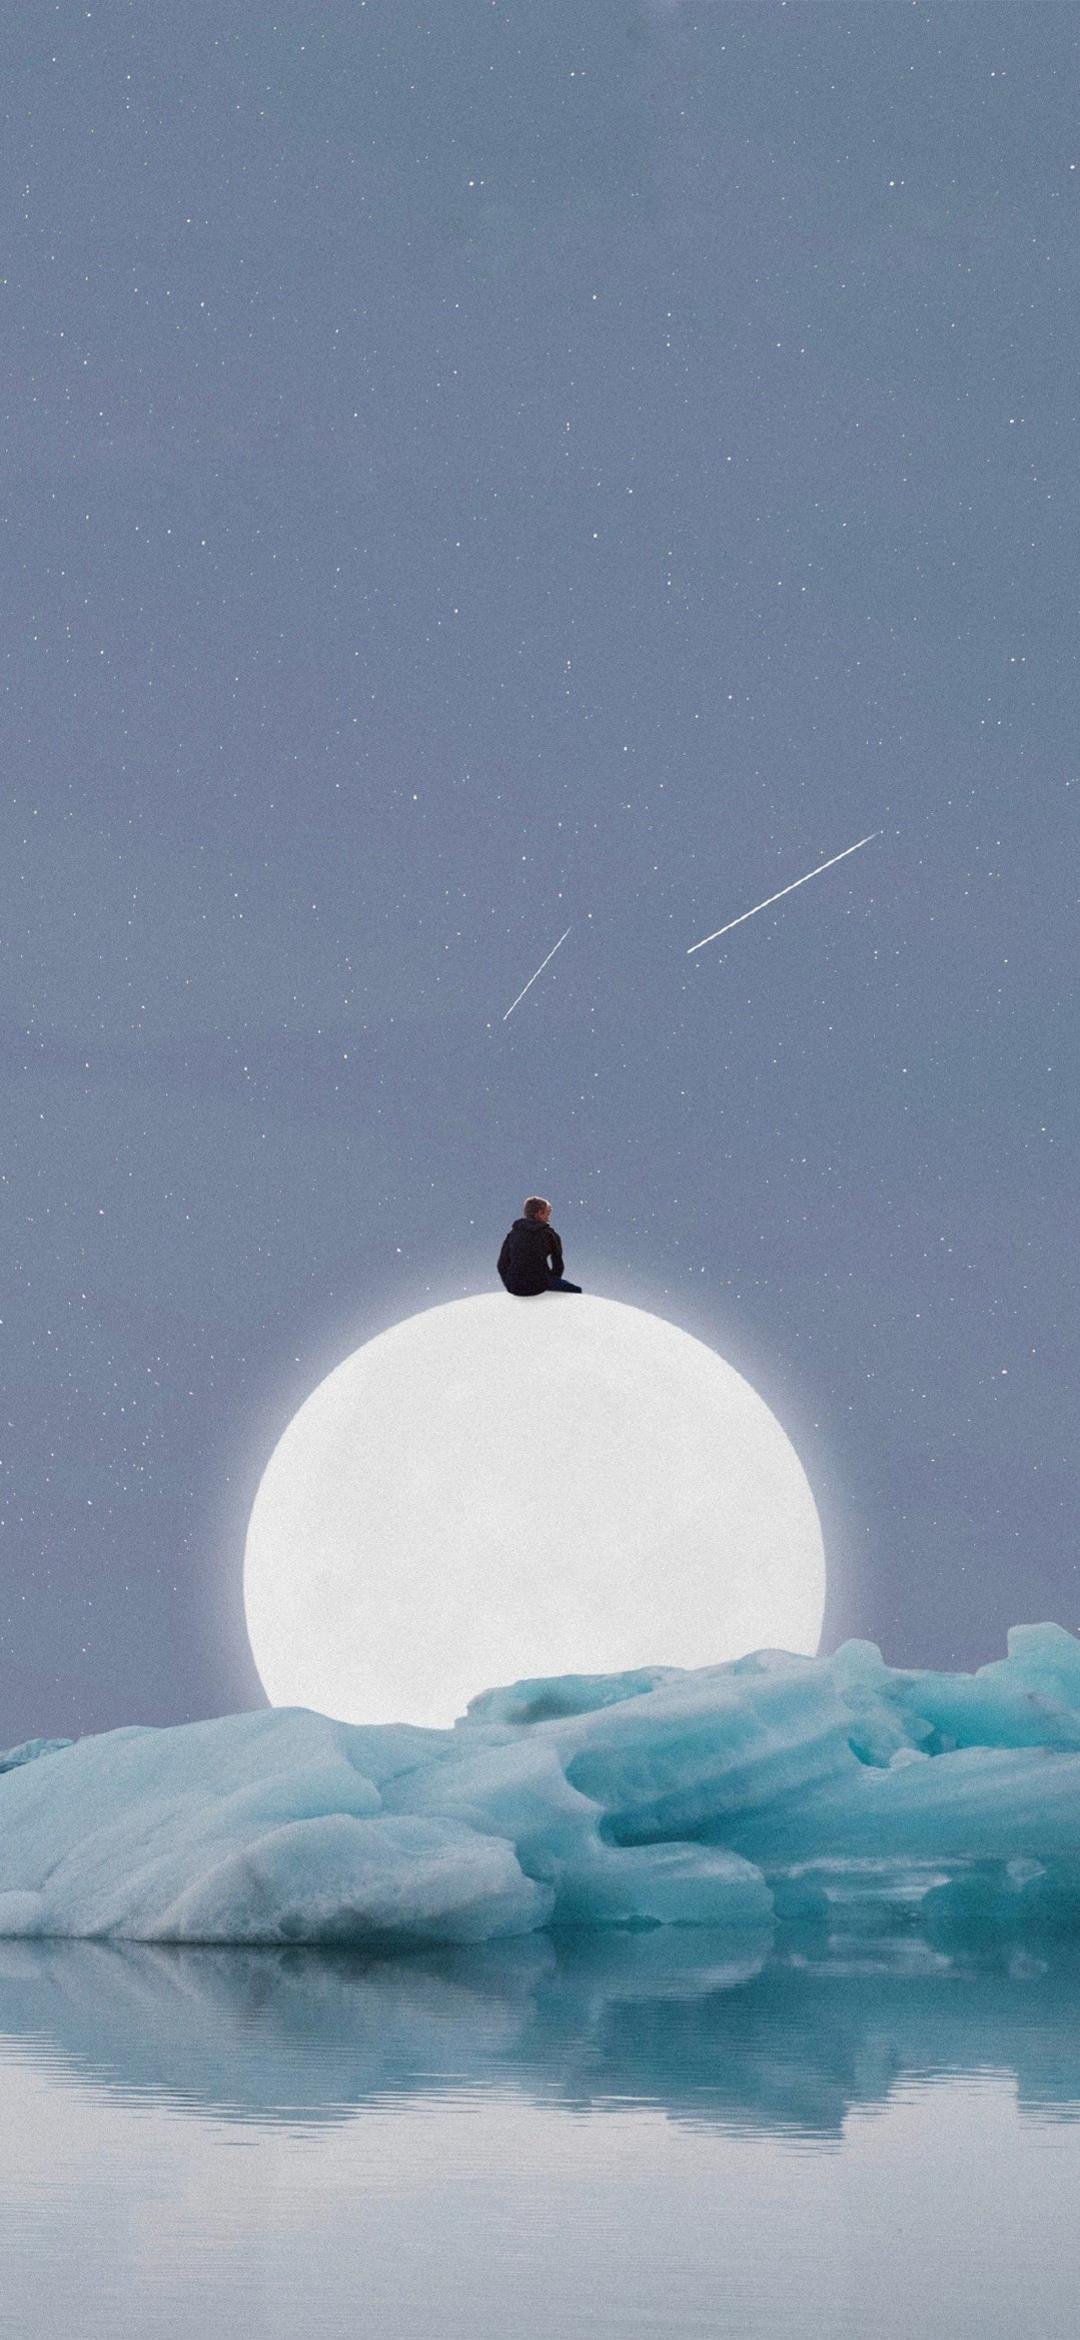 坐在月亮上的孤独者